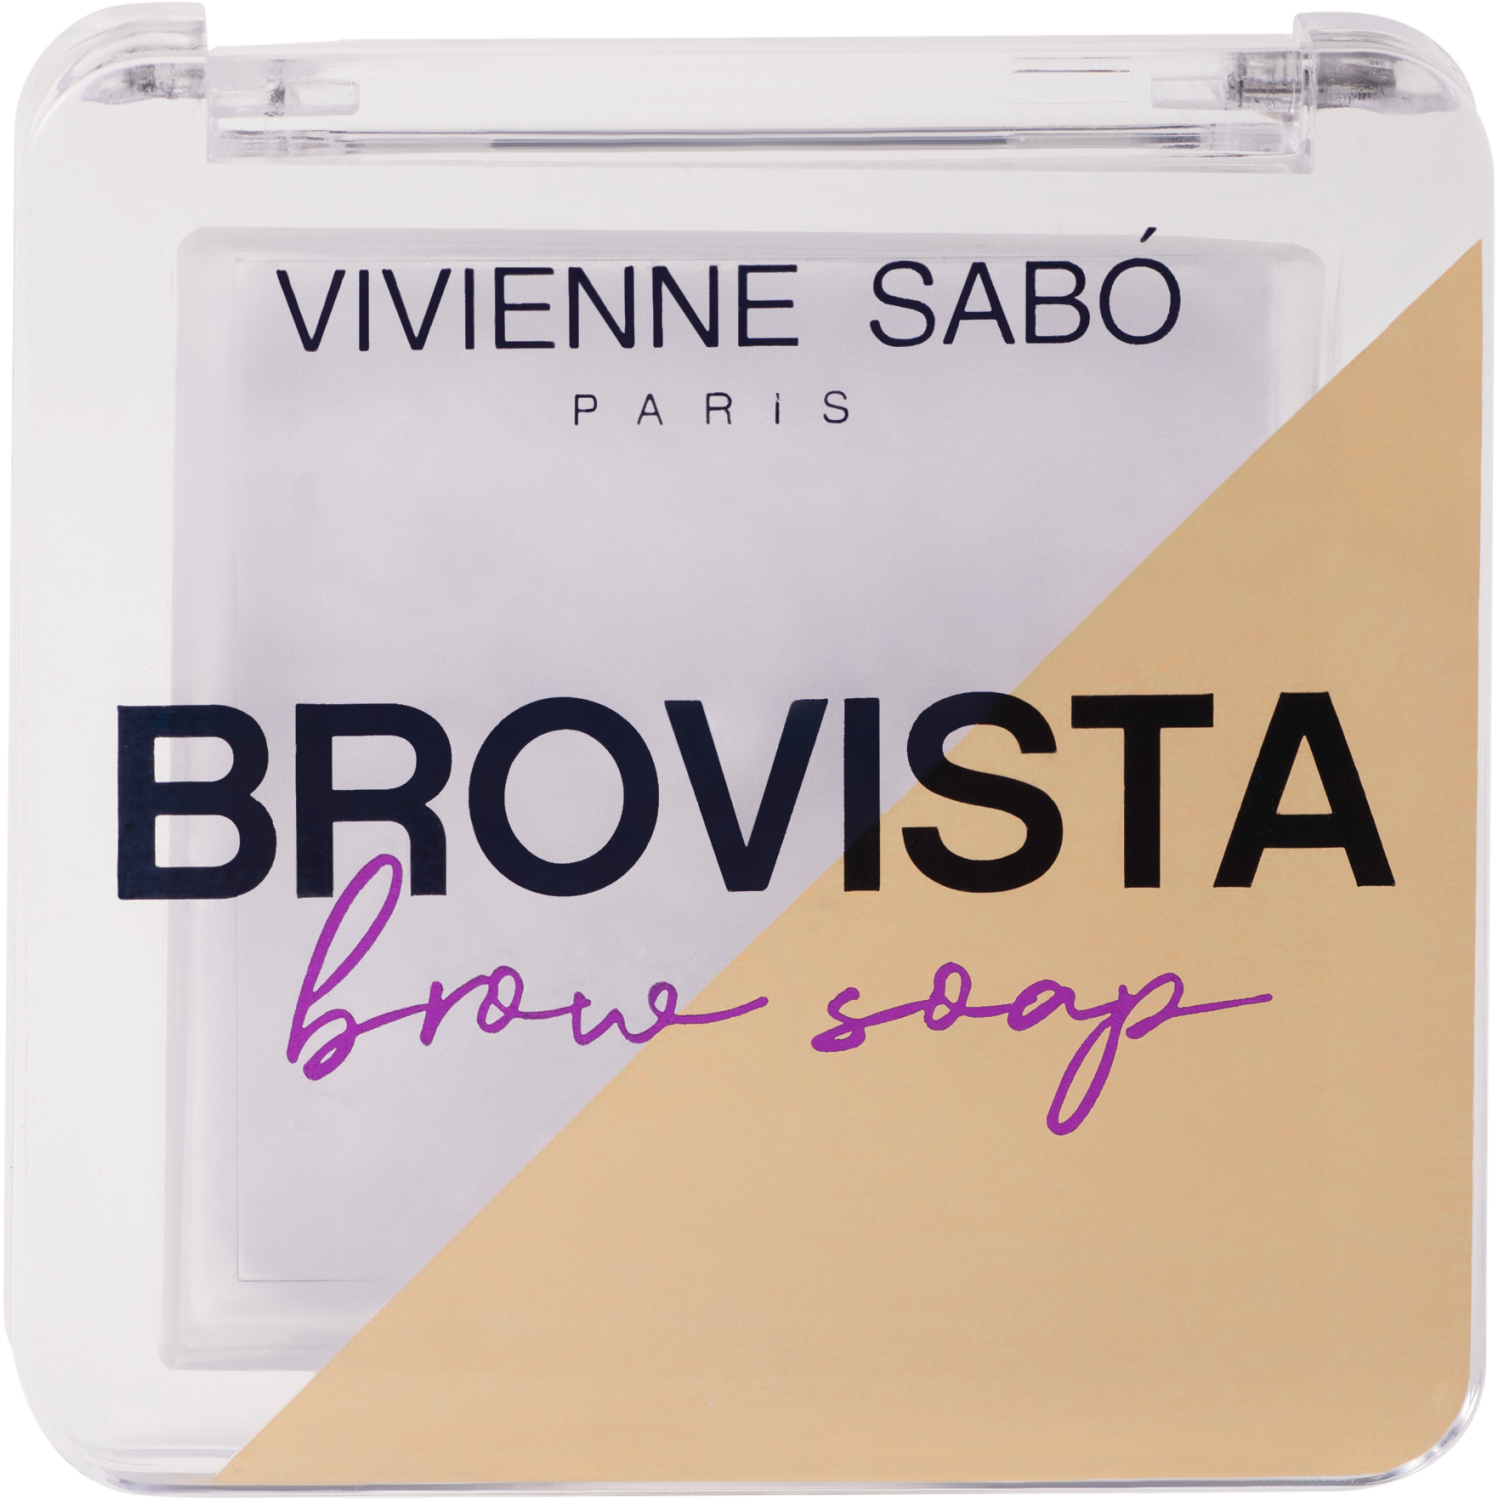 Фиксатор для бровей Vivienne Sabo Brovista brow soap, эффект ламинирования бровей, прозрачно-белесый, 3гр. тушь для бровей тон 14